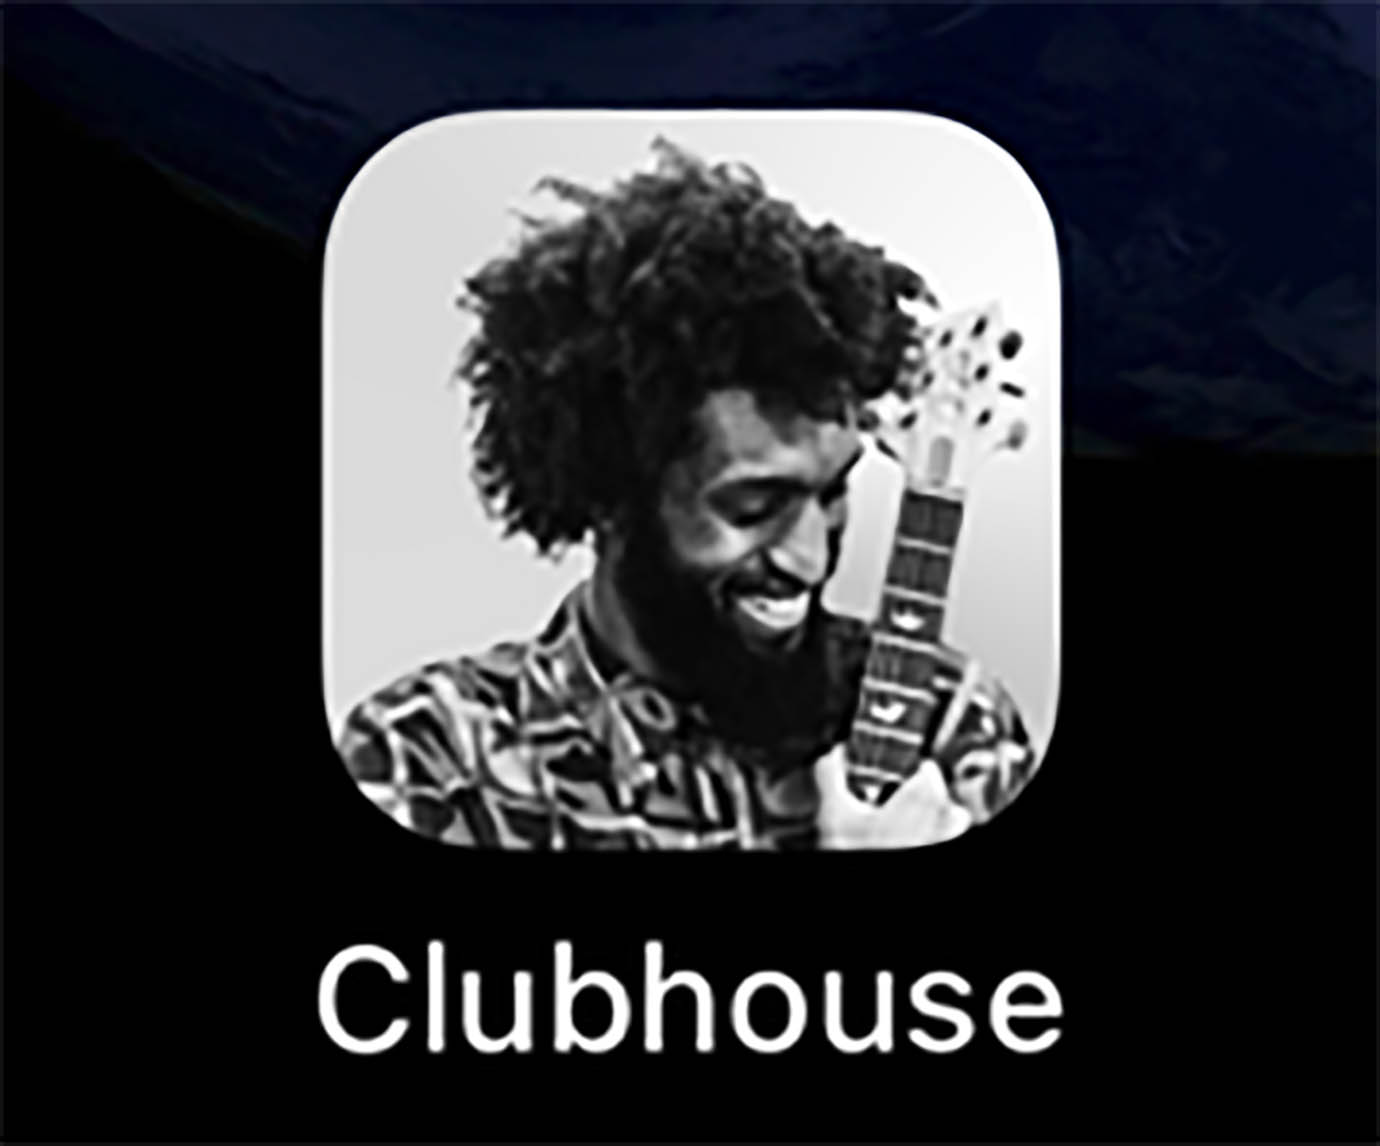 【クラブハウス】Clubhouseでフォロワー増やし目的の無音部屋に入ると規約違反でアカウント停止対象